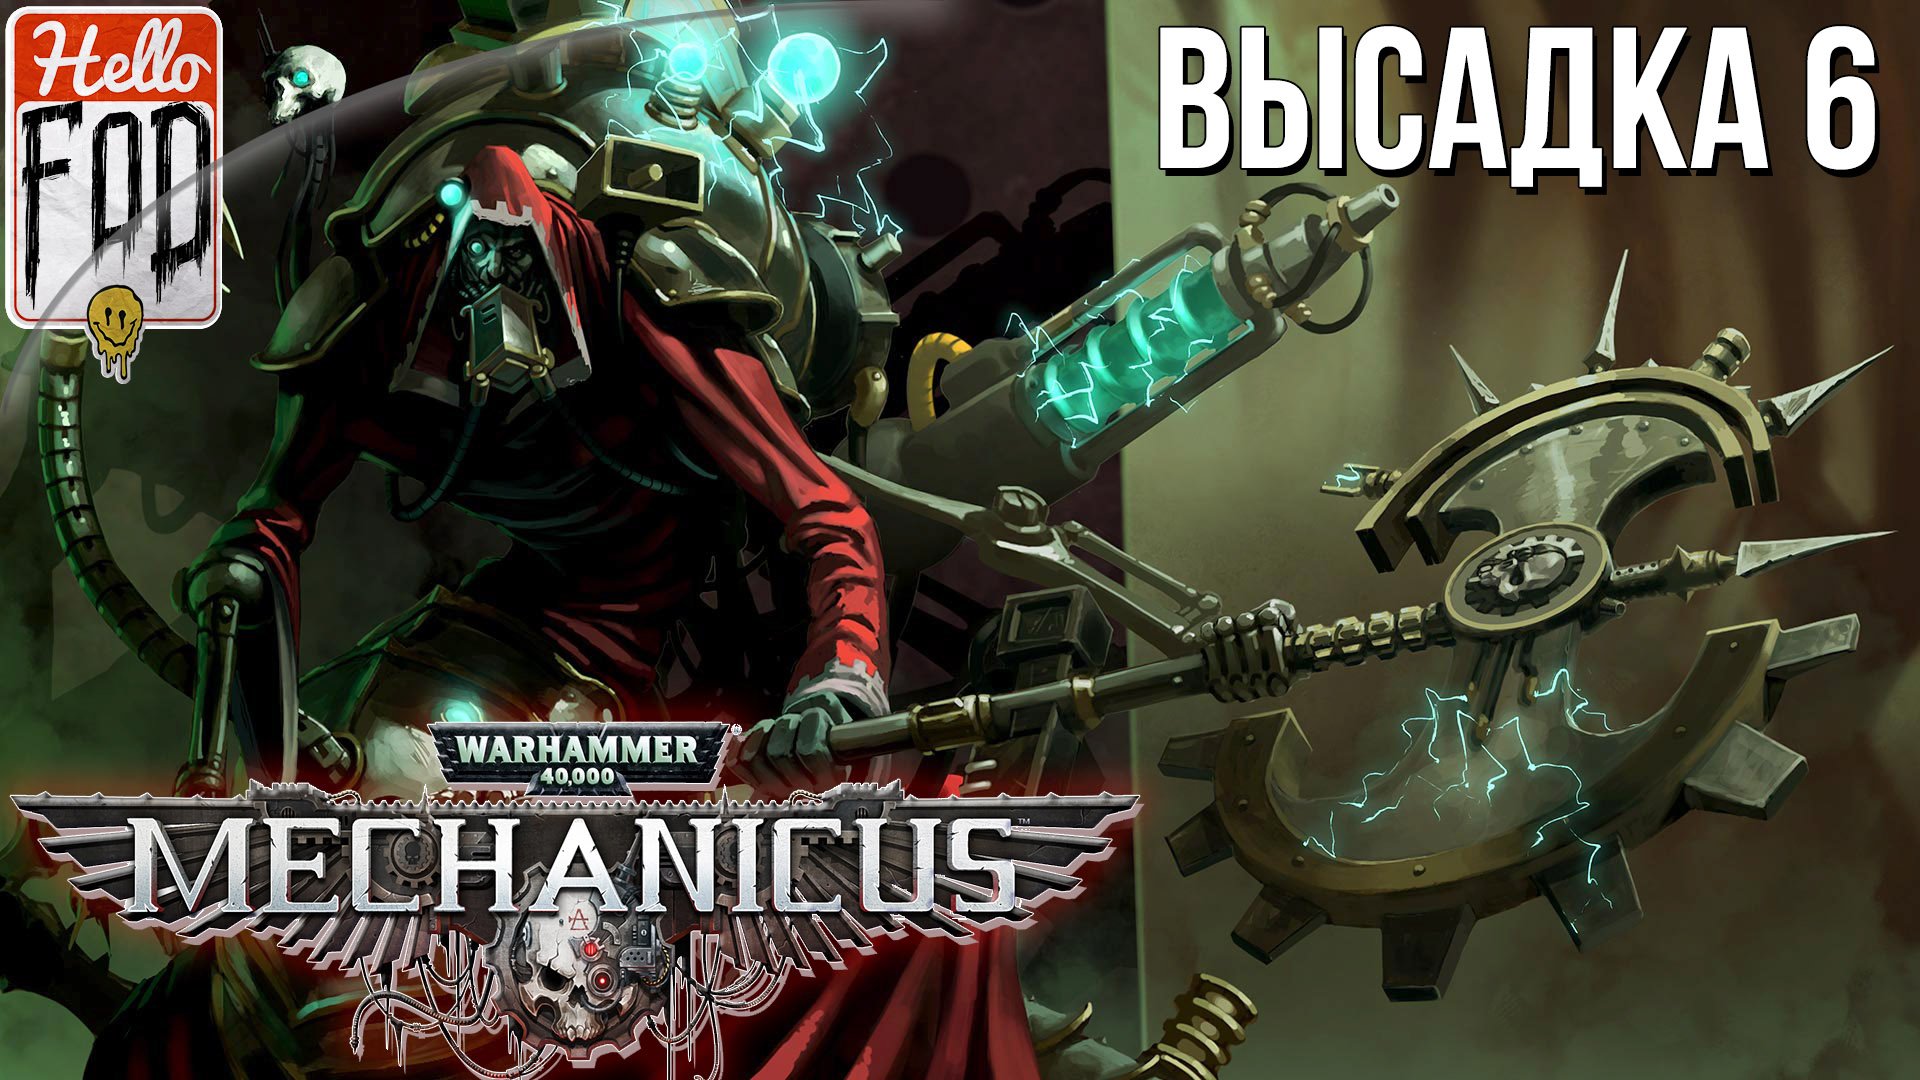 Warhammer 40.000 Mechanicus (Сложность: Очень сложно) ➤ Защита данных ➤ Высадка 6.